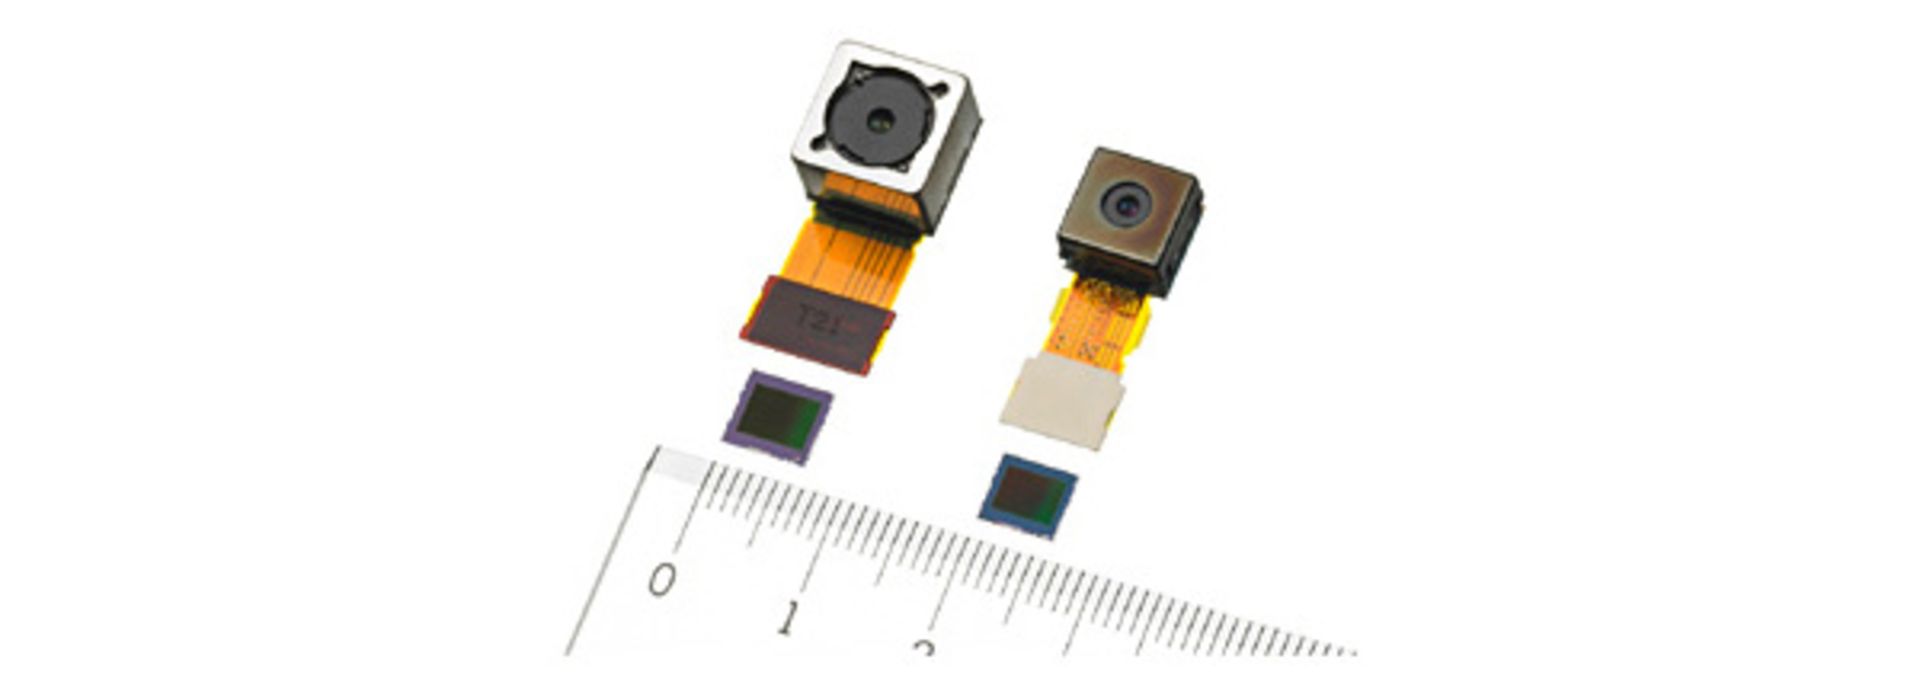 Sony 8MP and 16.4MP Camera